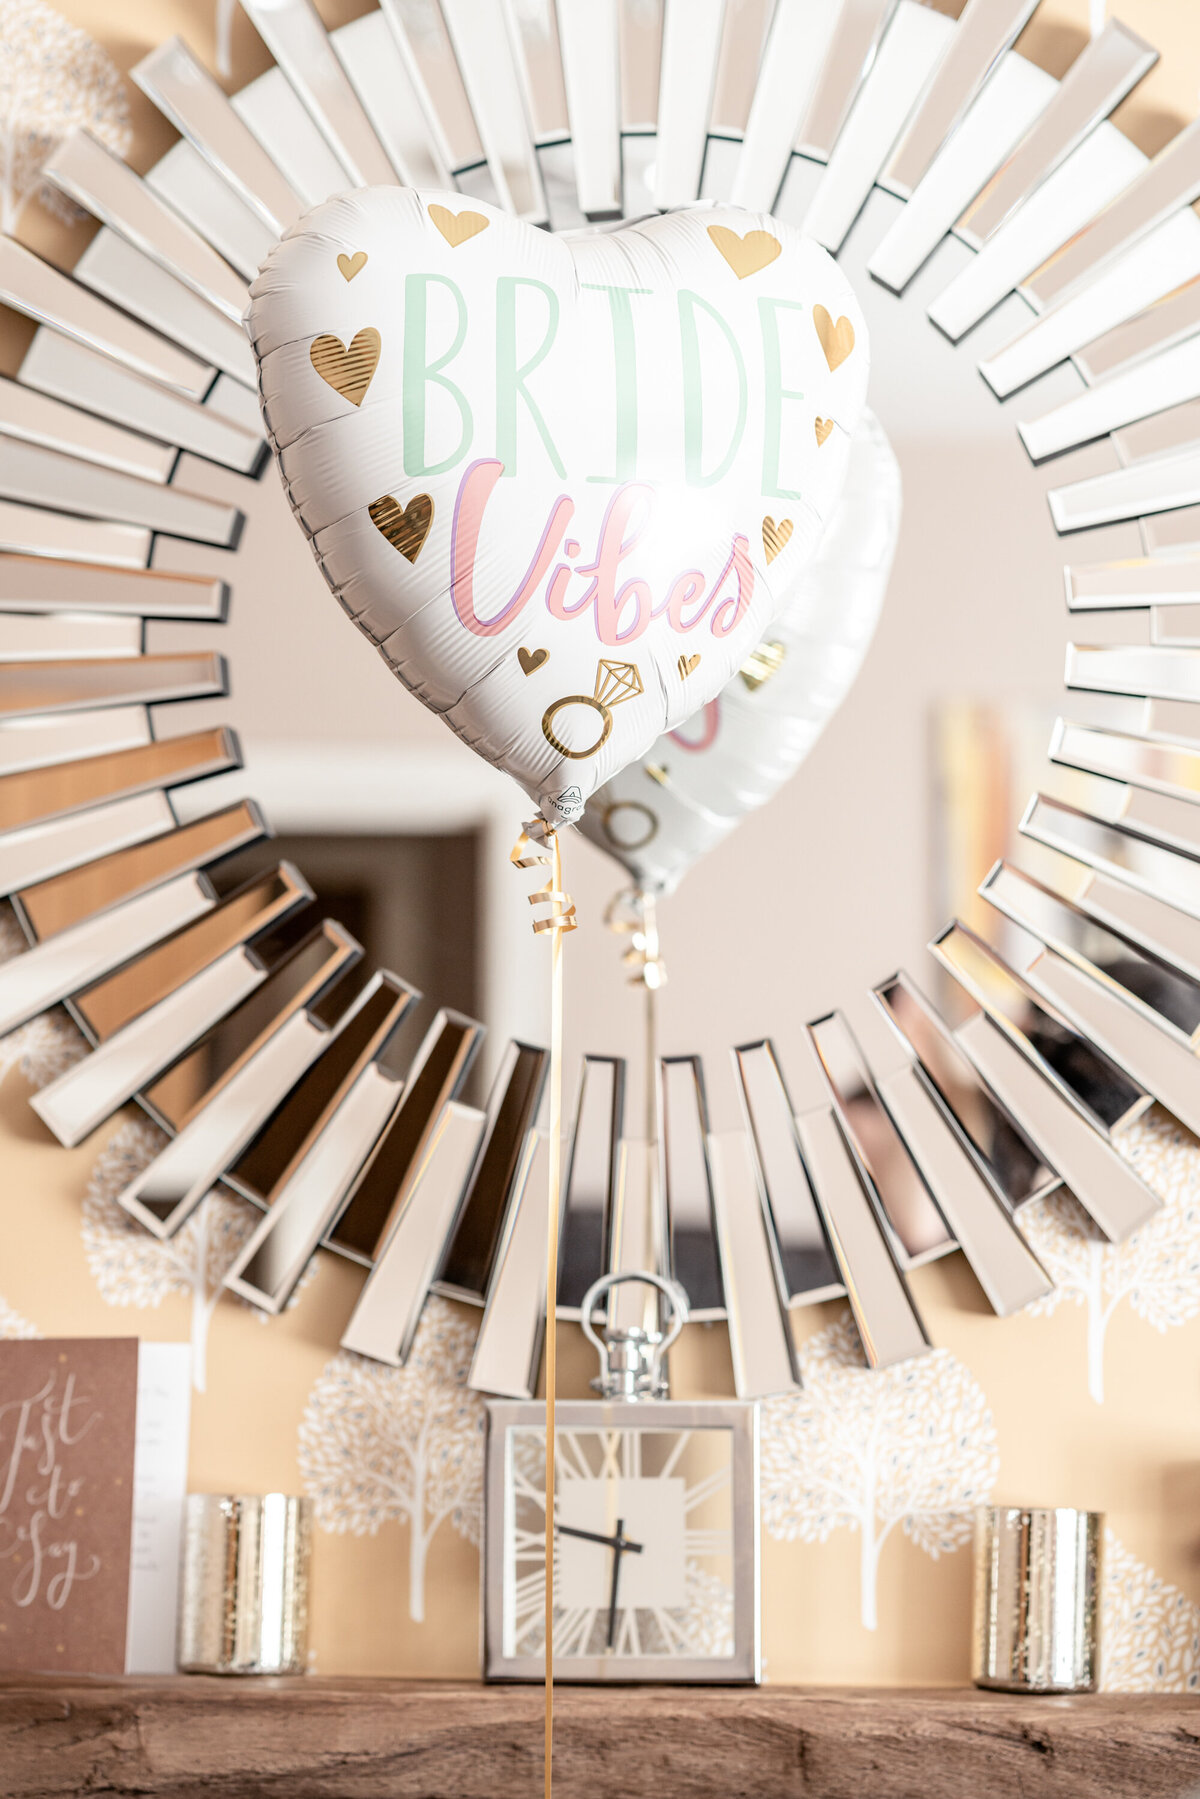 Bride-vibes-balloon